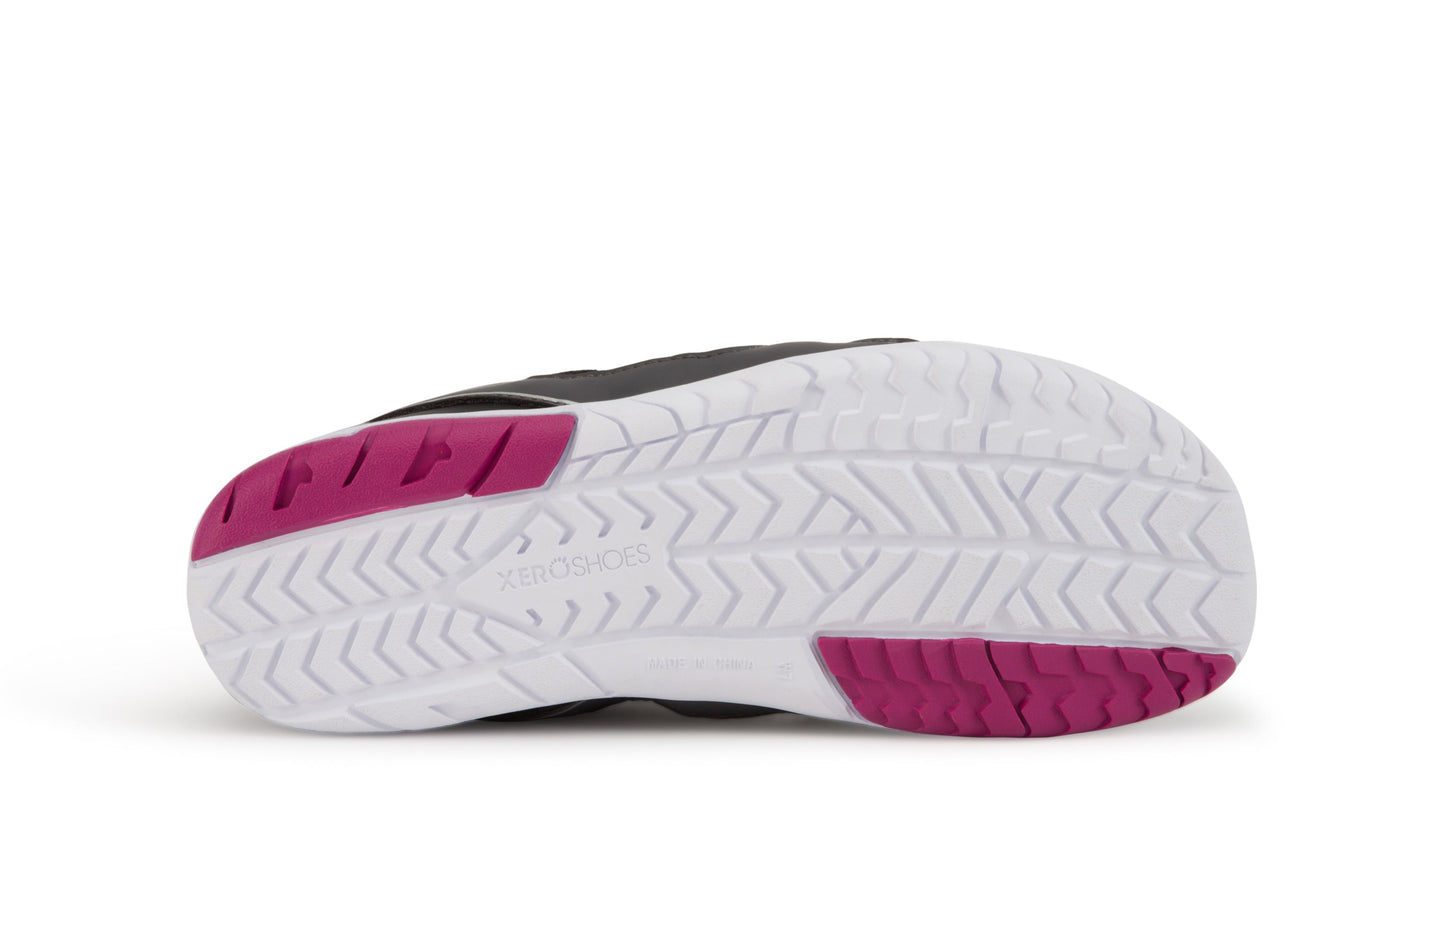 Xero Shoes Zelen Womens barfods træningssko til kvinder i farven steel gray / fuchsia, saal